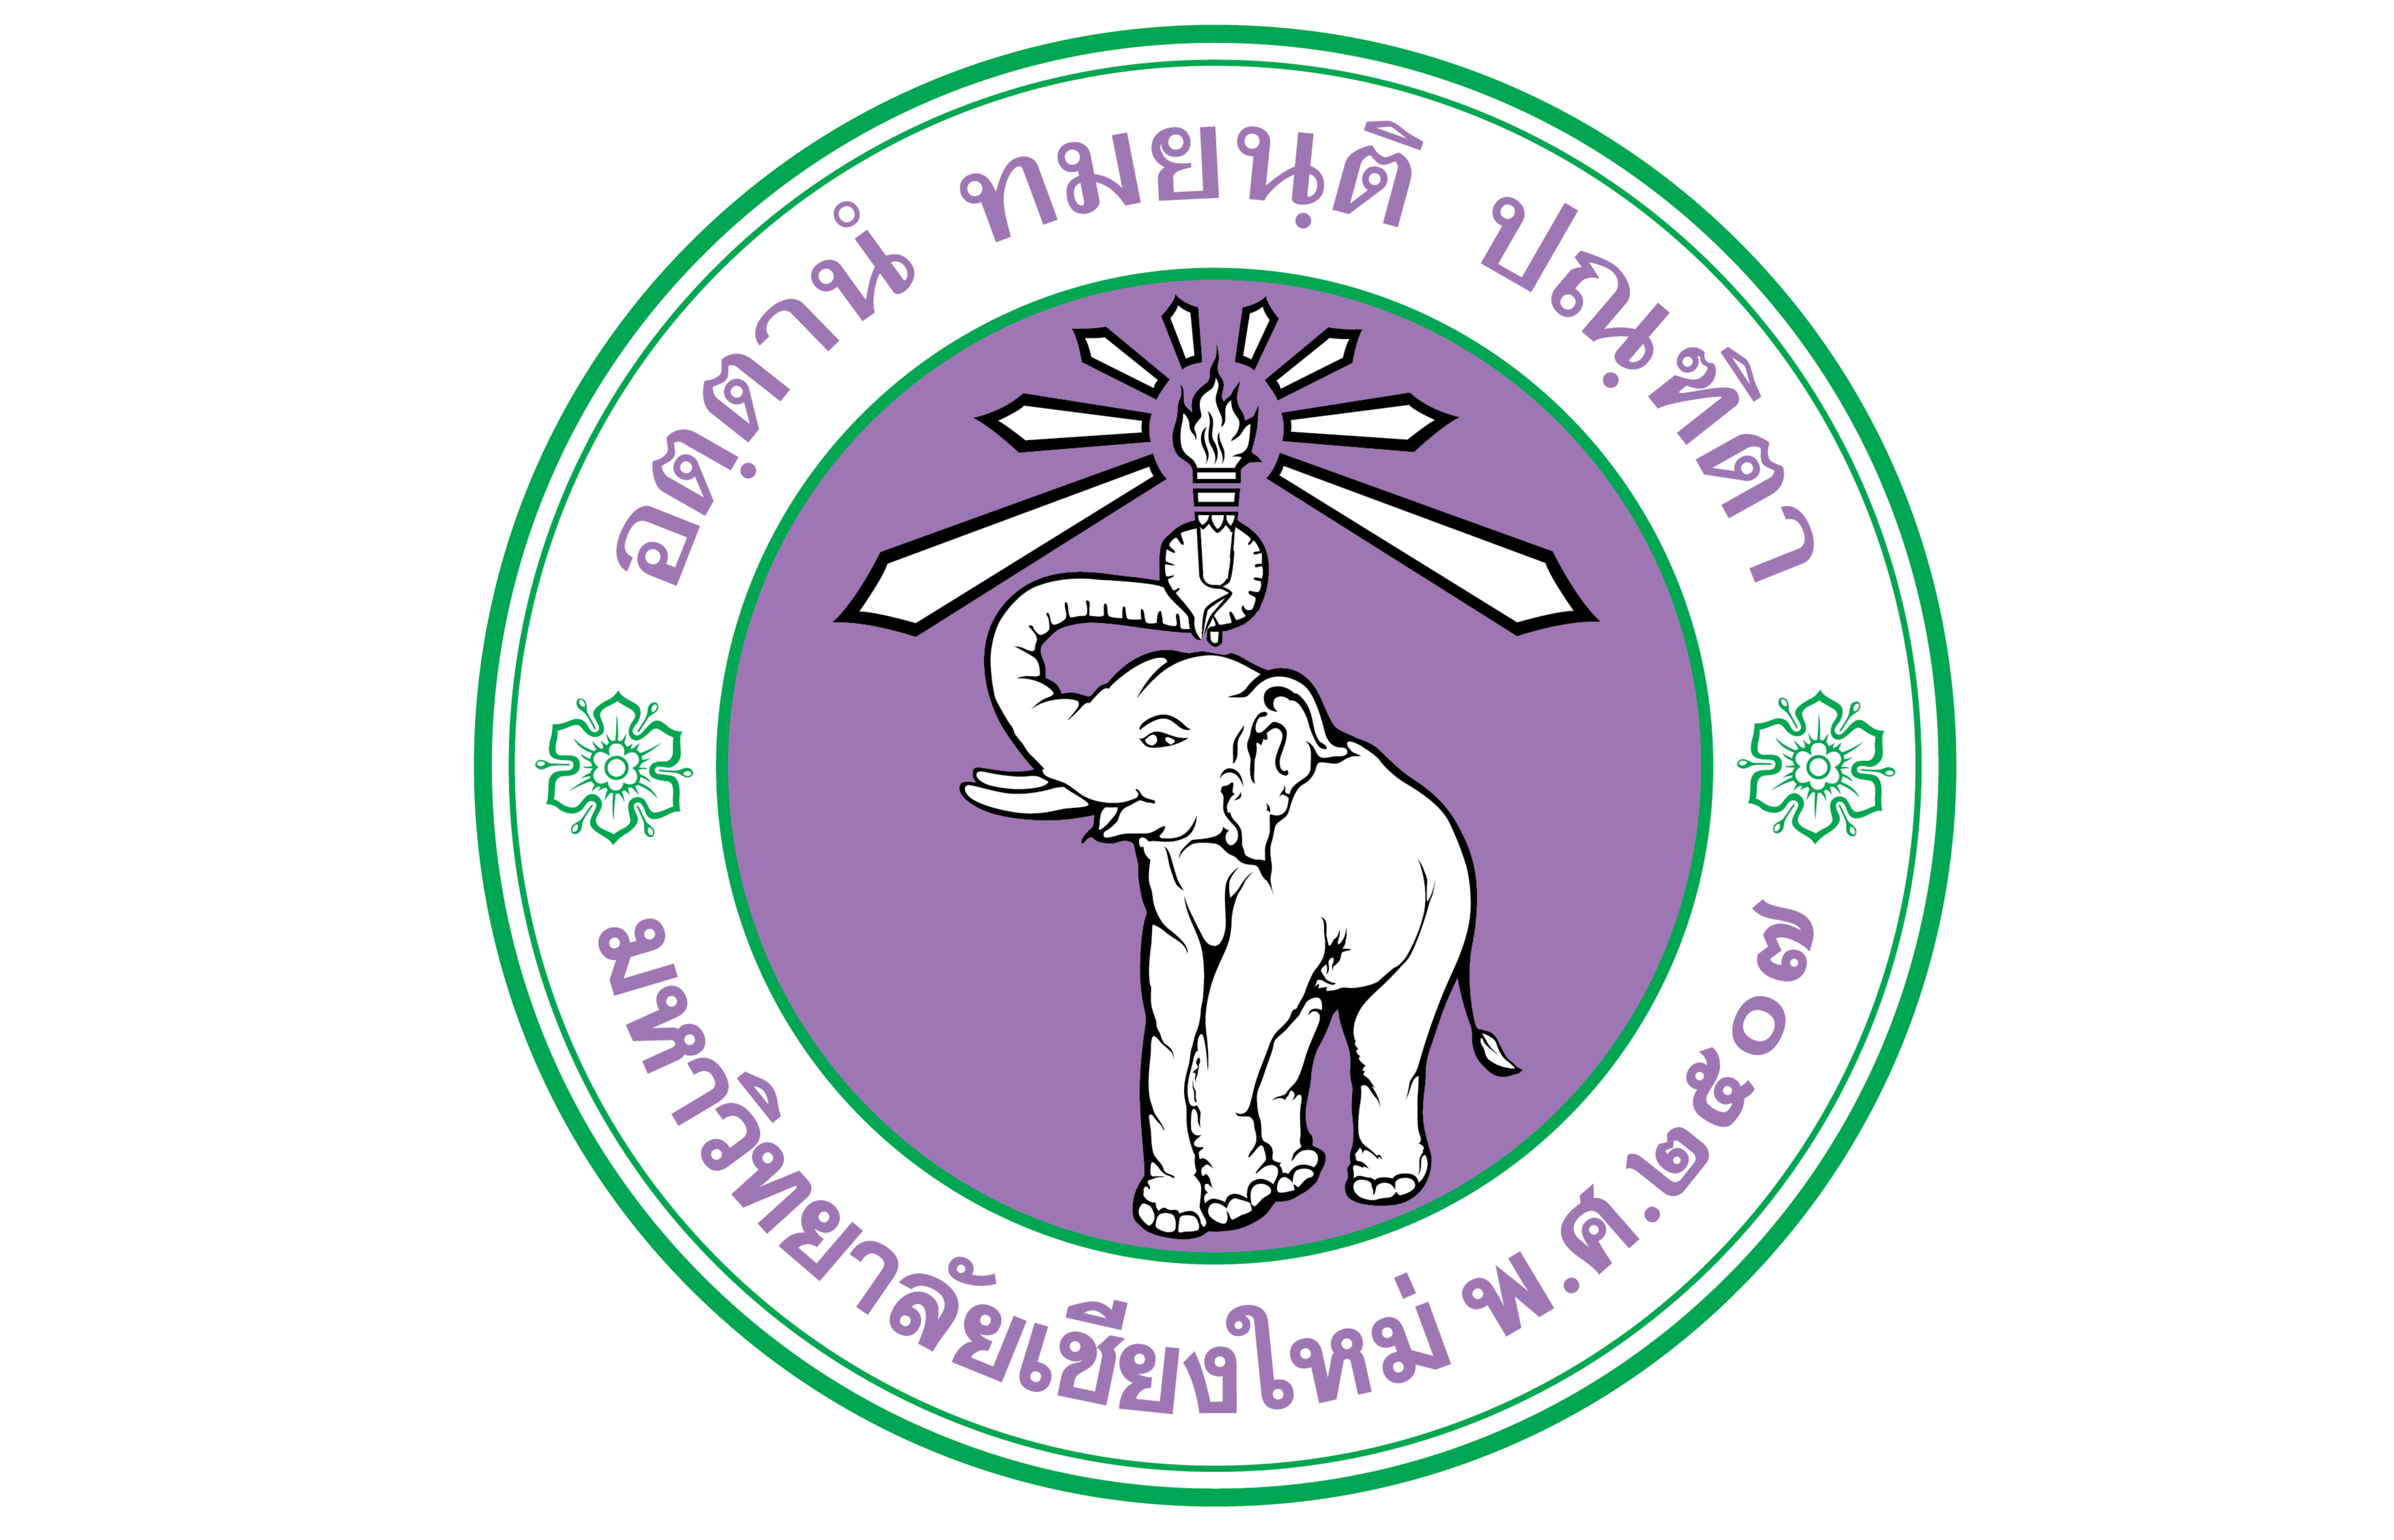 Chiang Mai University